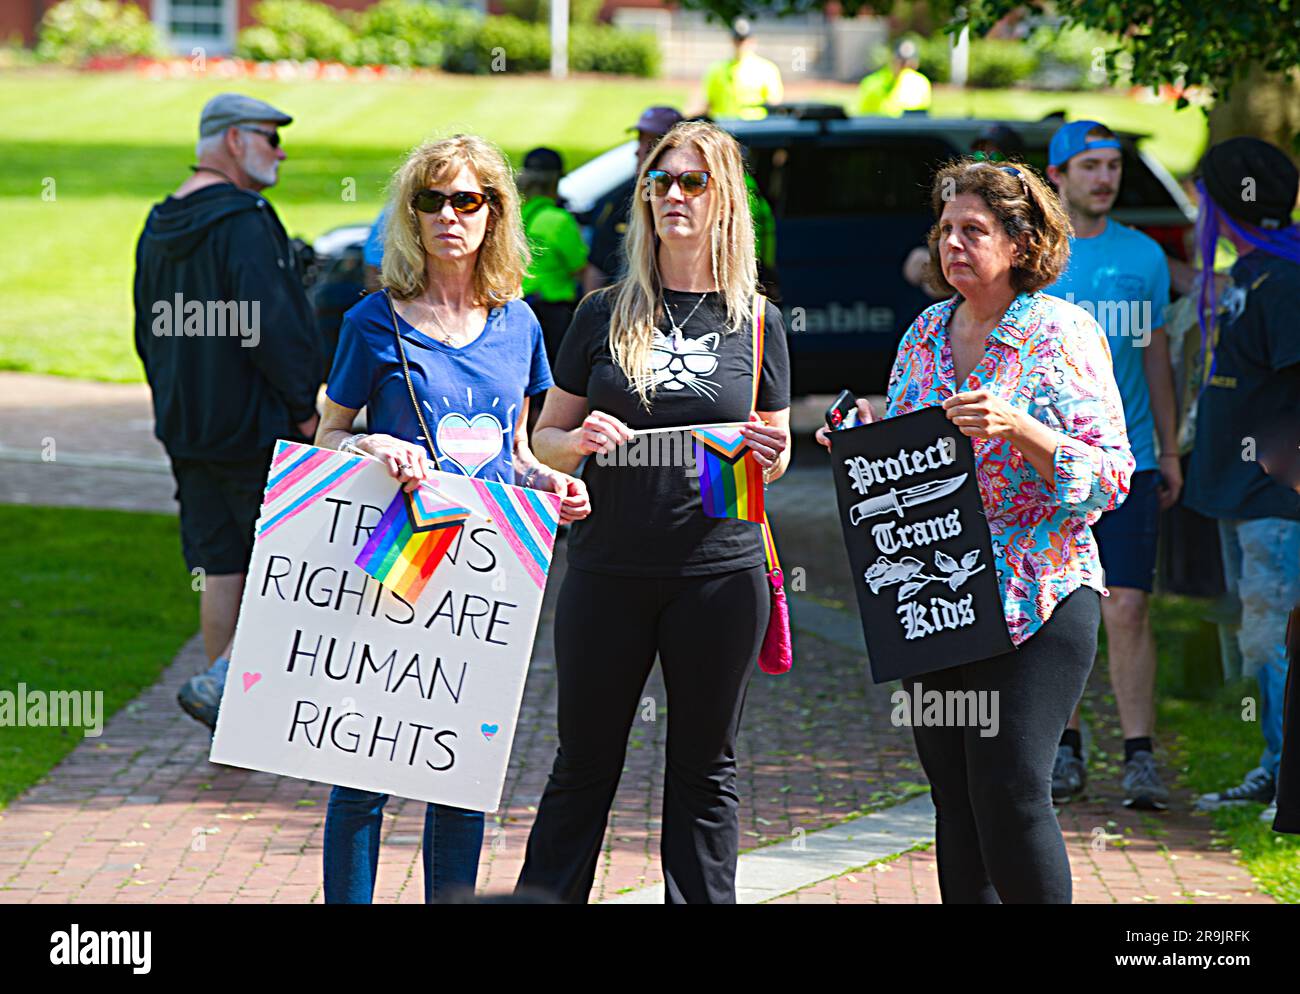 Adolescenti contro il raduno delle mutilazioni genitali, Hyannis, ma, USA (Cape Cod), manifestanti che tengono manifesti e bandiere Foto Stock